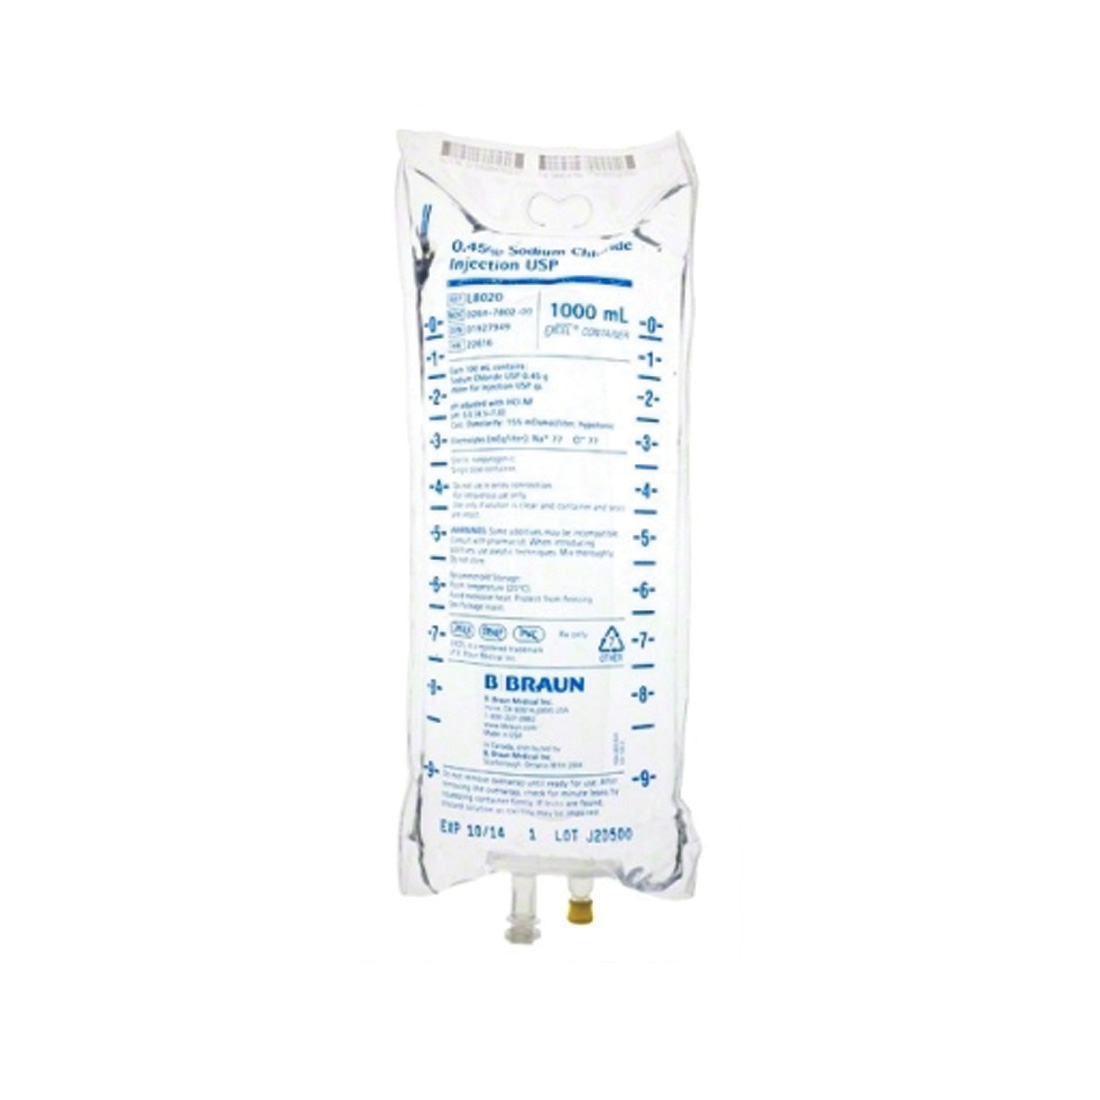 Sodium Chloride .45% 1000ml Plastic Bag - 12/Case